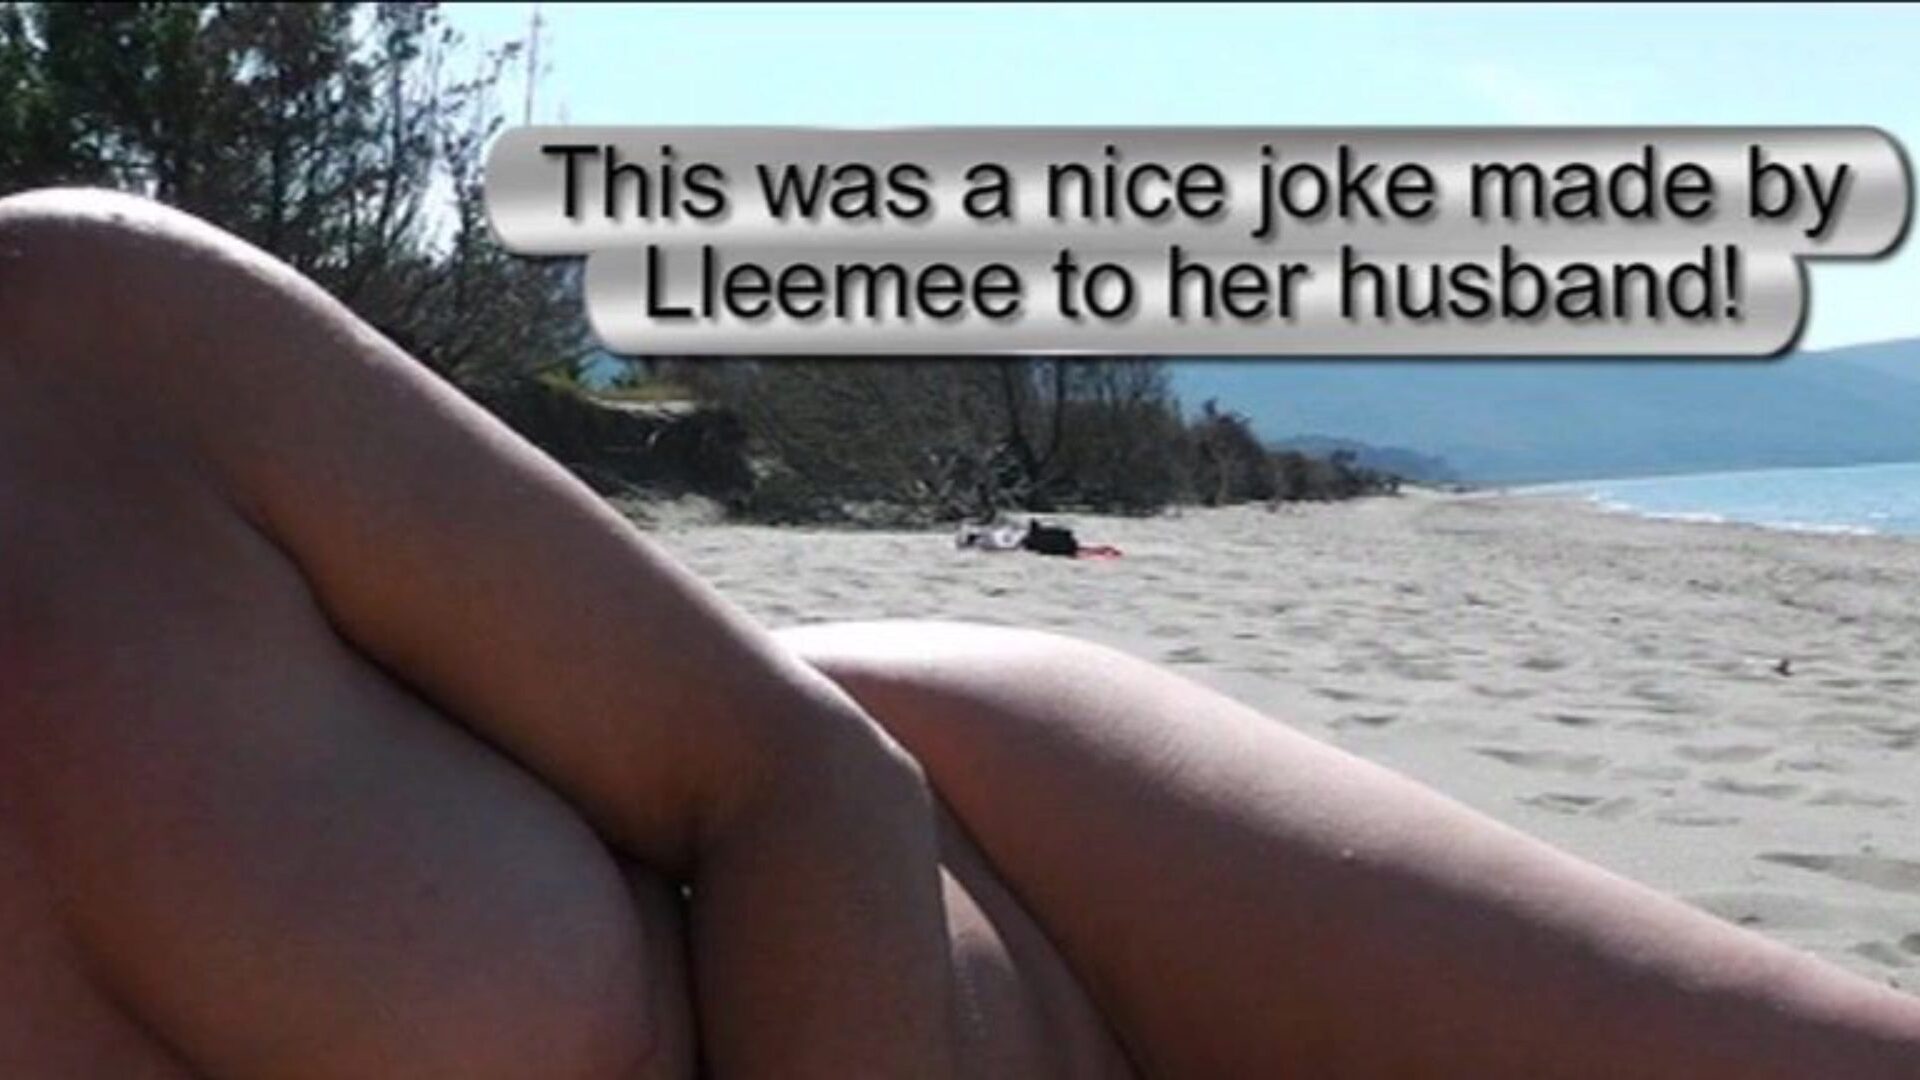 show de playa masturbación - hombre presenciando a dos una broma muy valiosa hecha por lleemee a su marido